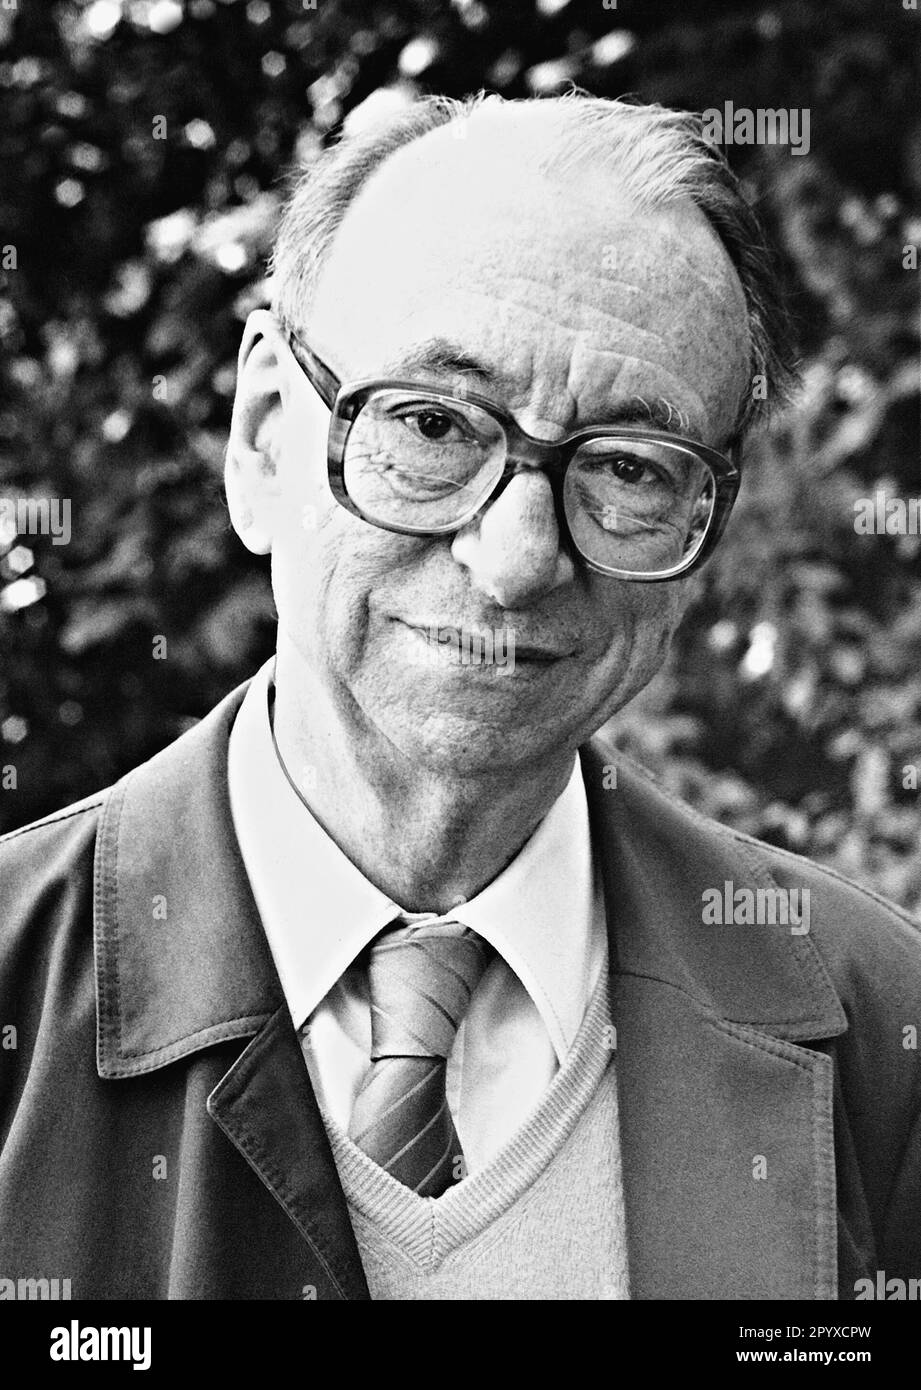 Heinrich Albertz (1915-93), teologo e politico tedesco (SPD). Fu sindaco di Berlino 1966-67. Foto non datata, probabilmente scattata negli anni '1980s. [traduzione automatica] Foto Stock